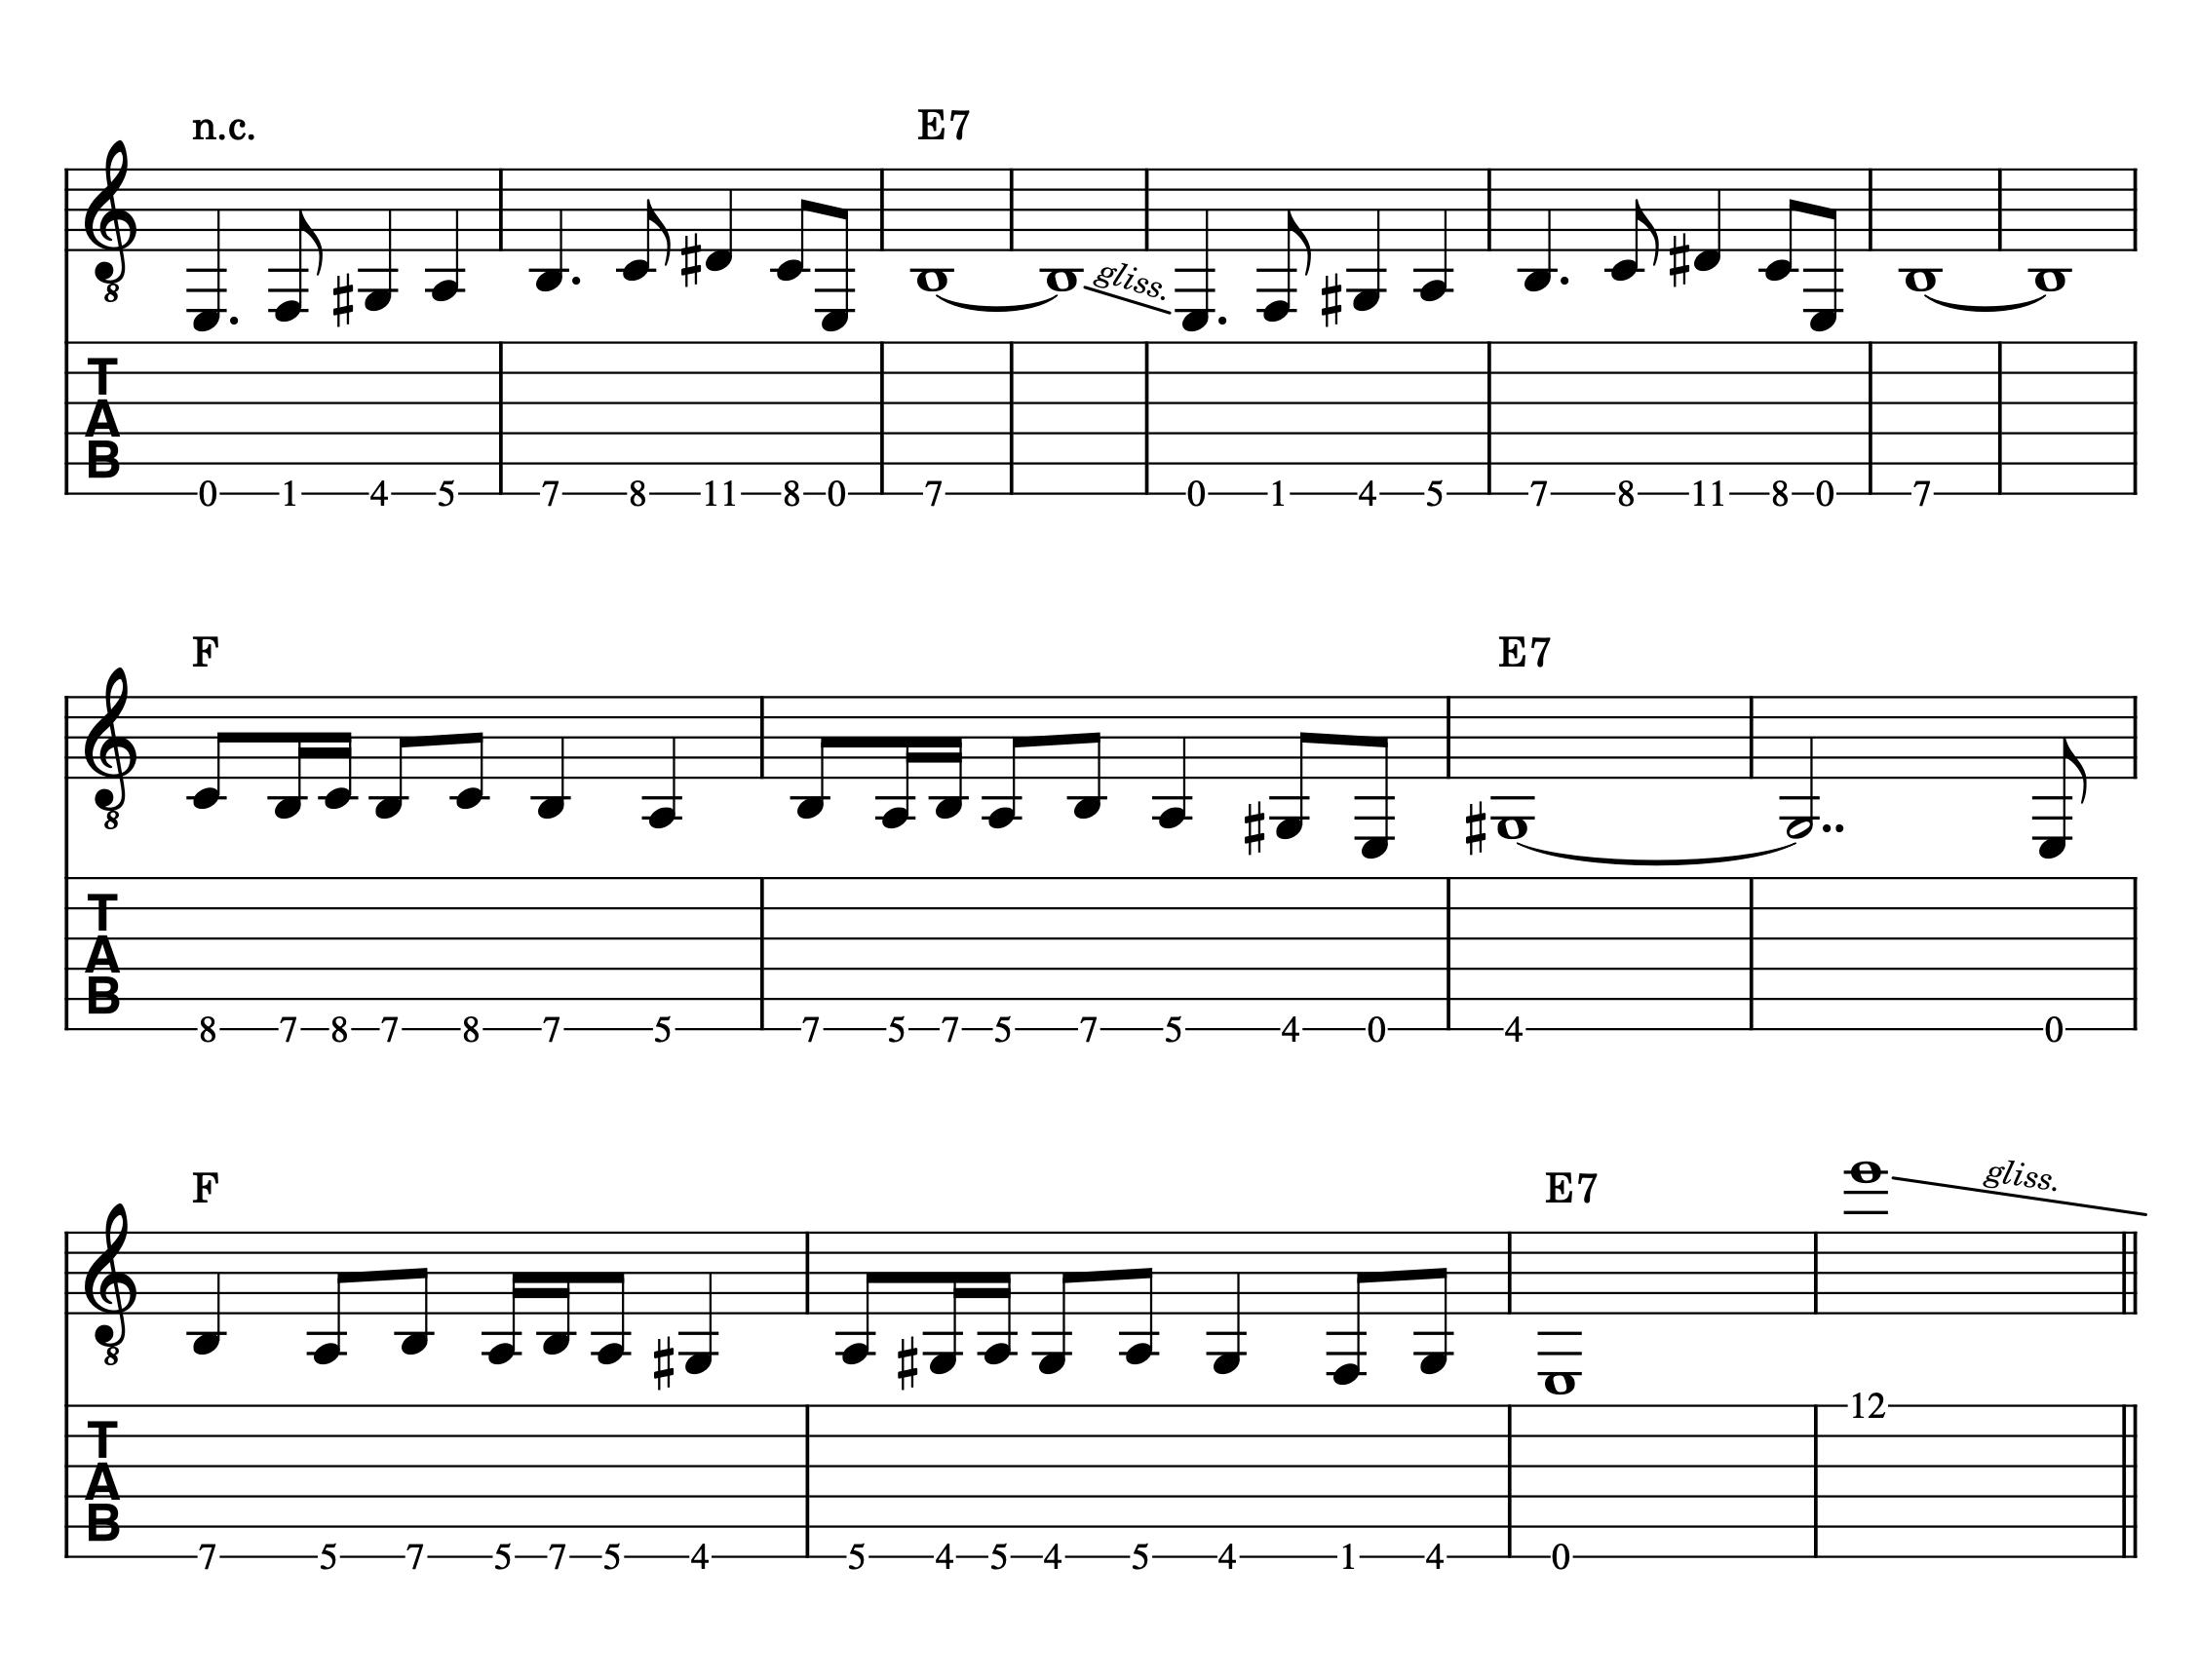 Partitura y tablatura para guitarra de la parte principal de Misirlou de Dick Dale, tocado en la cuerda 6